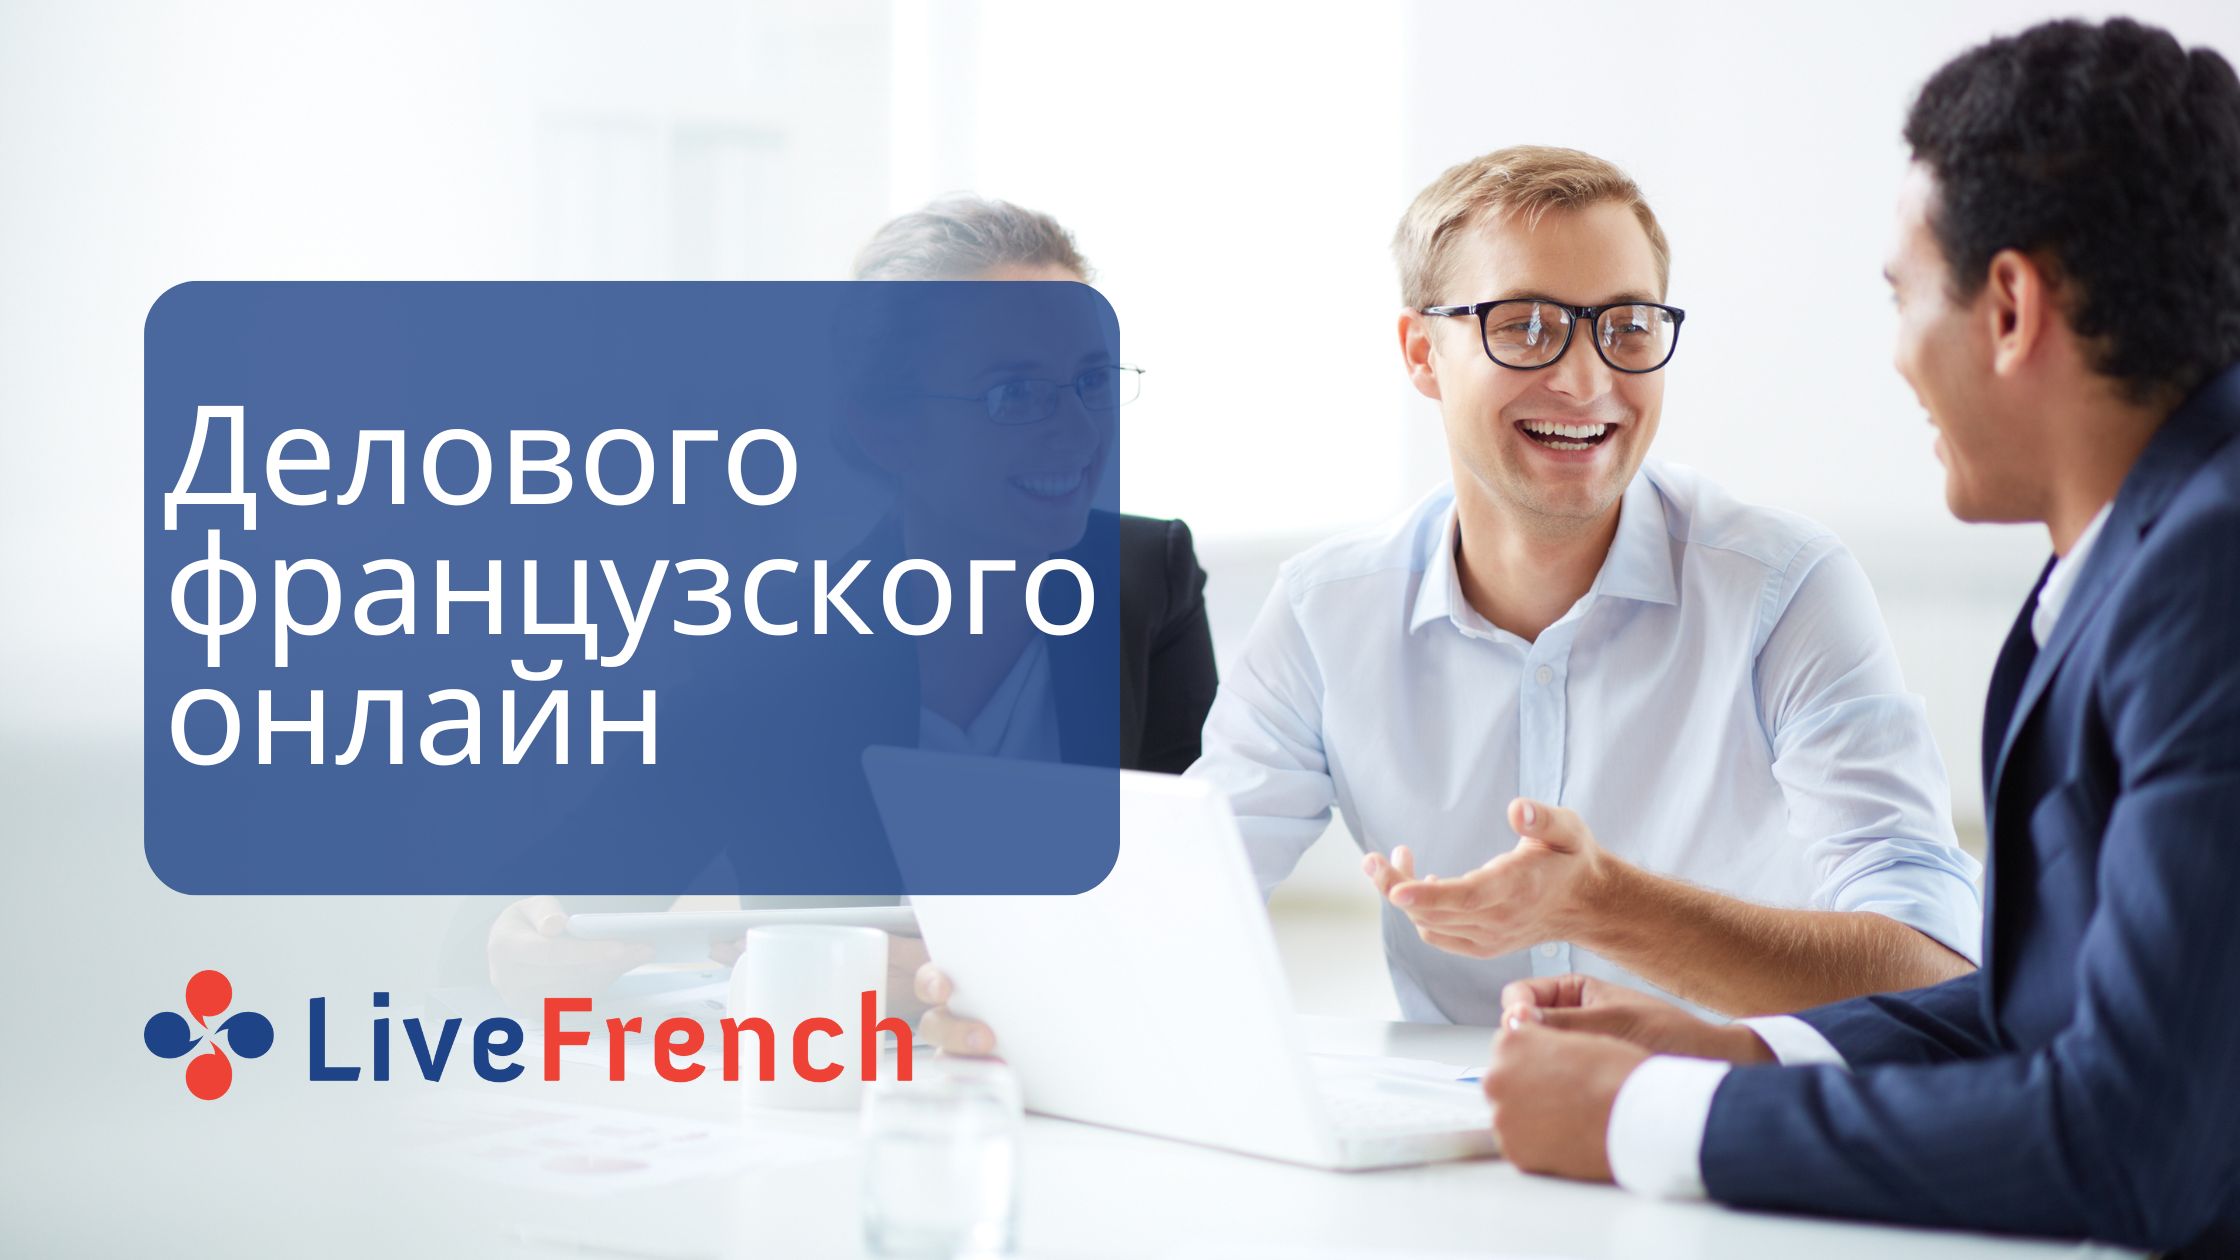 Онлайн-уроки делового французского